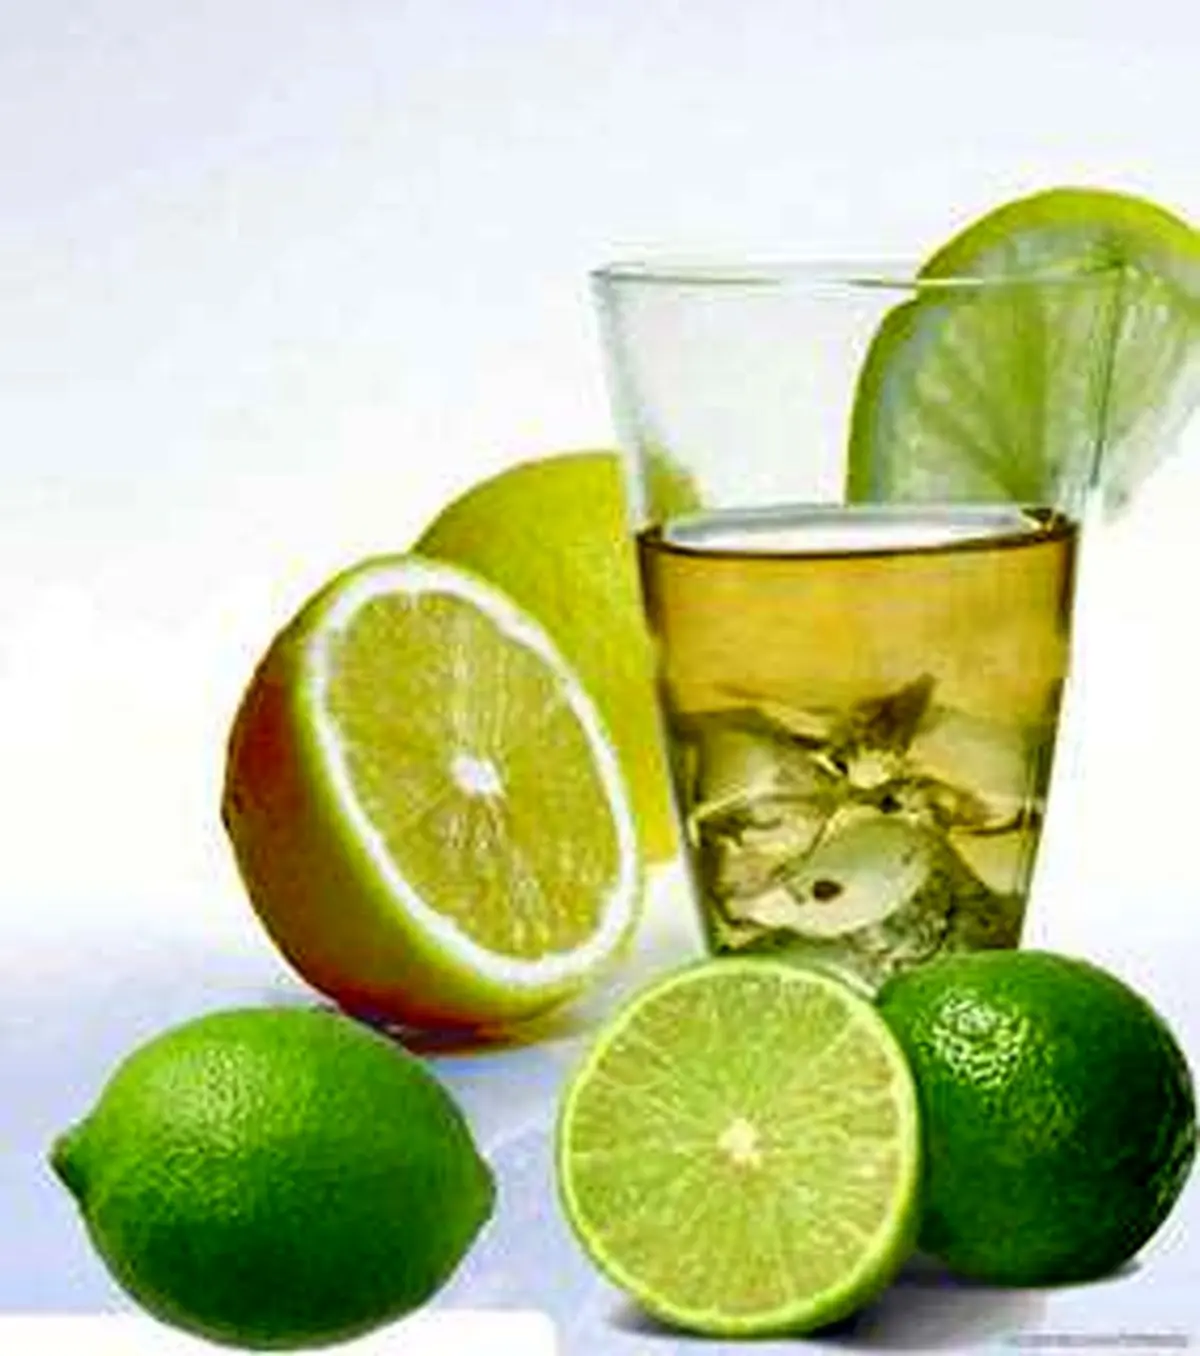 آیا از معجزه نوشیدن آب لیمو با معده خالی خبر دارید؟!